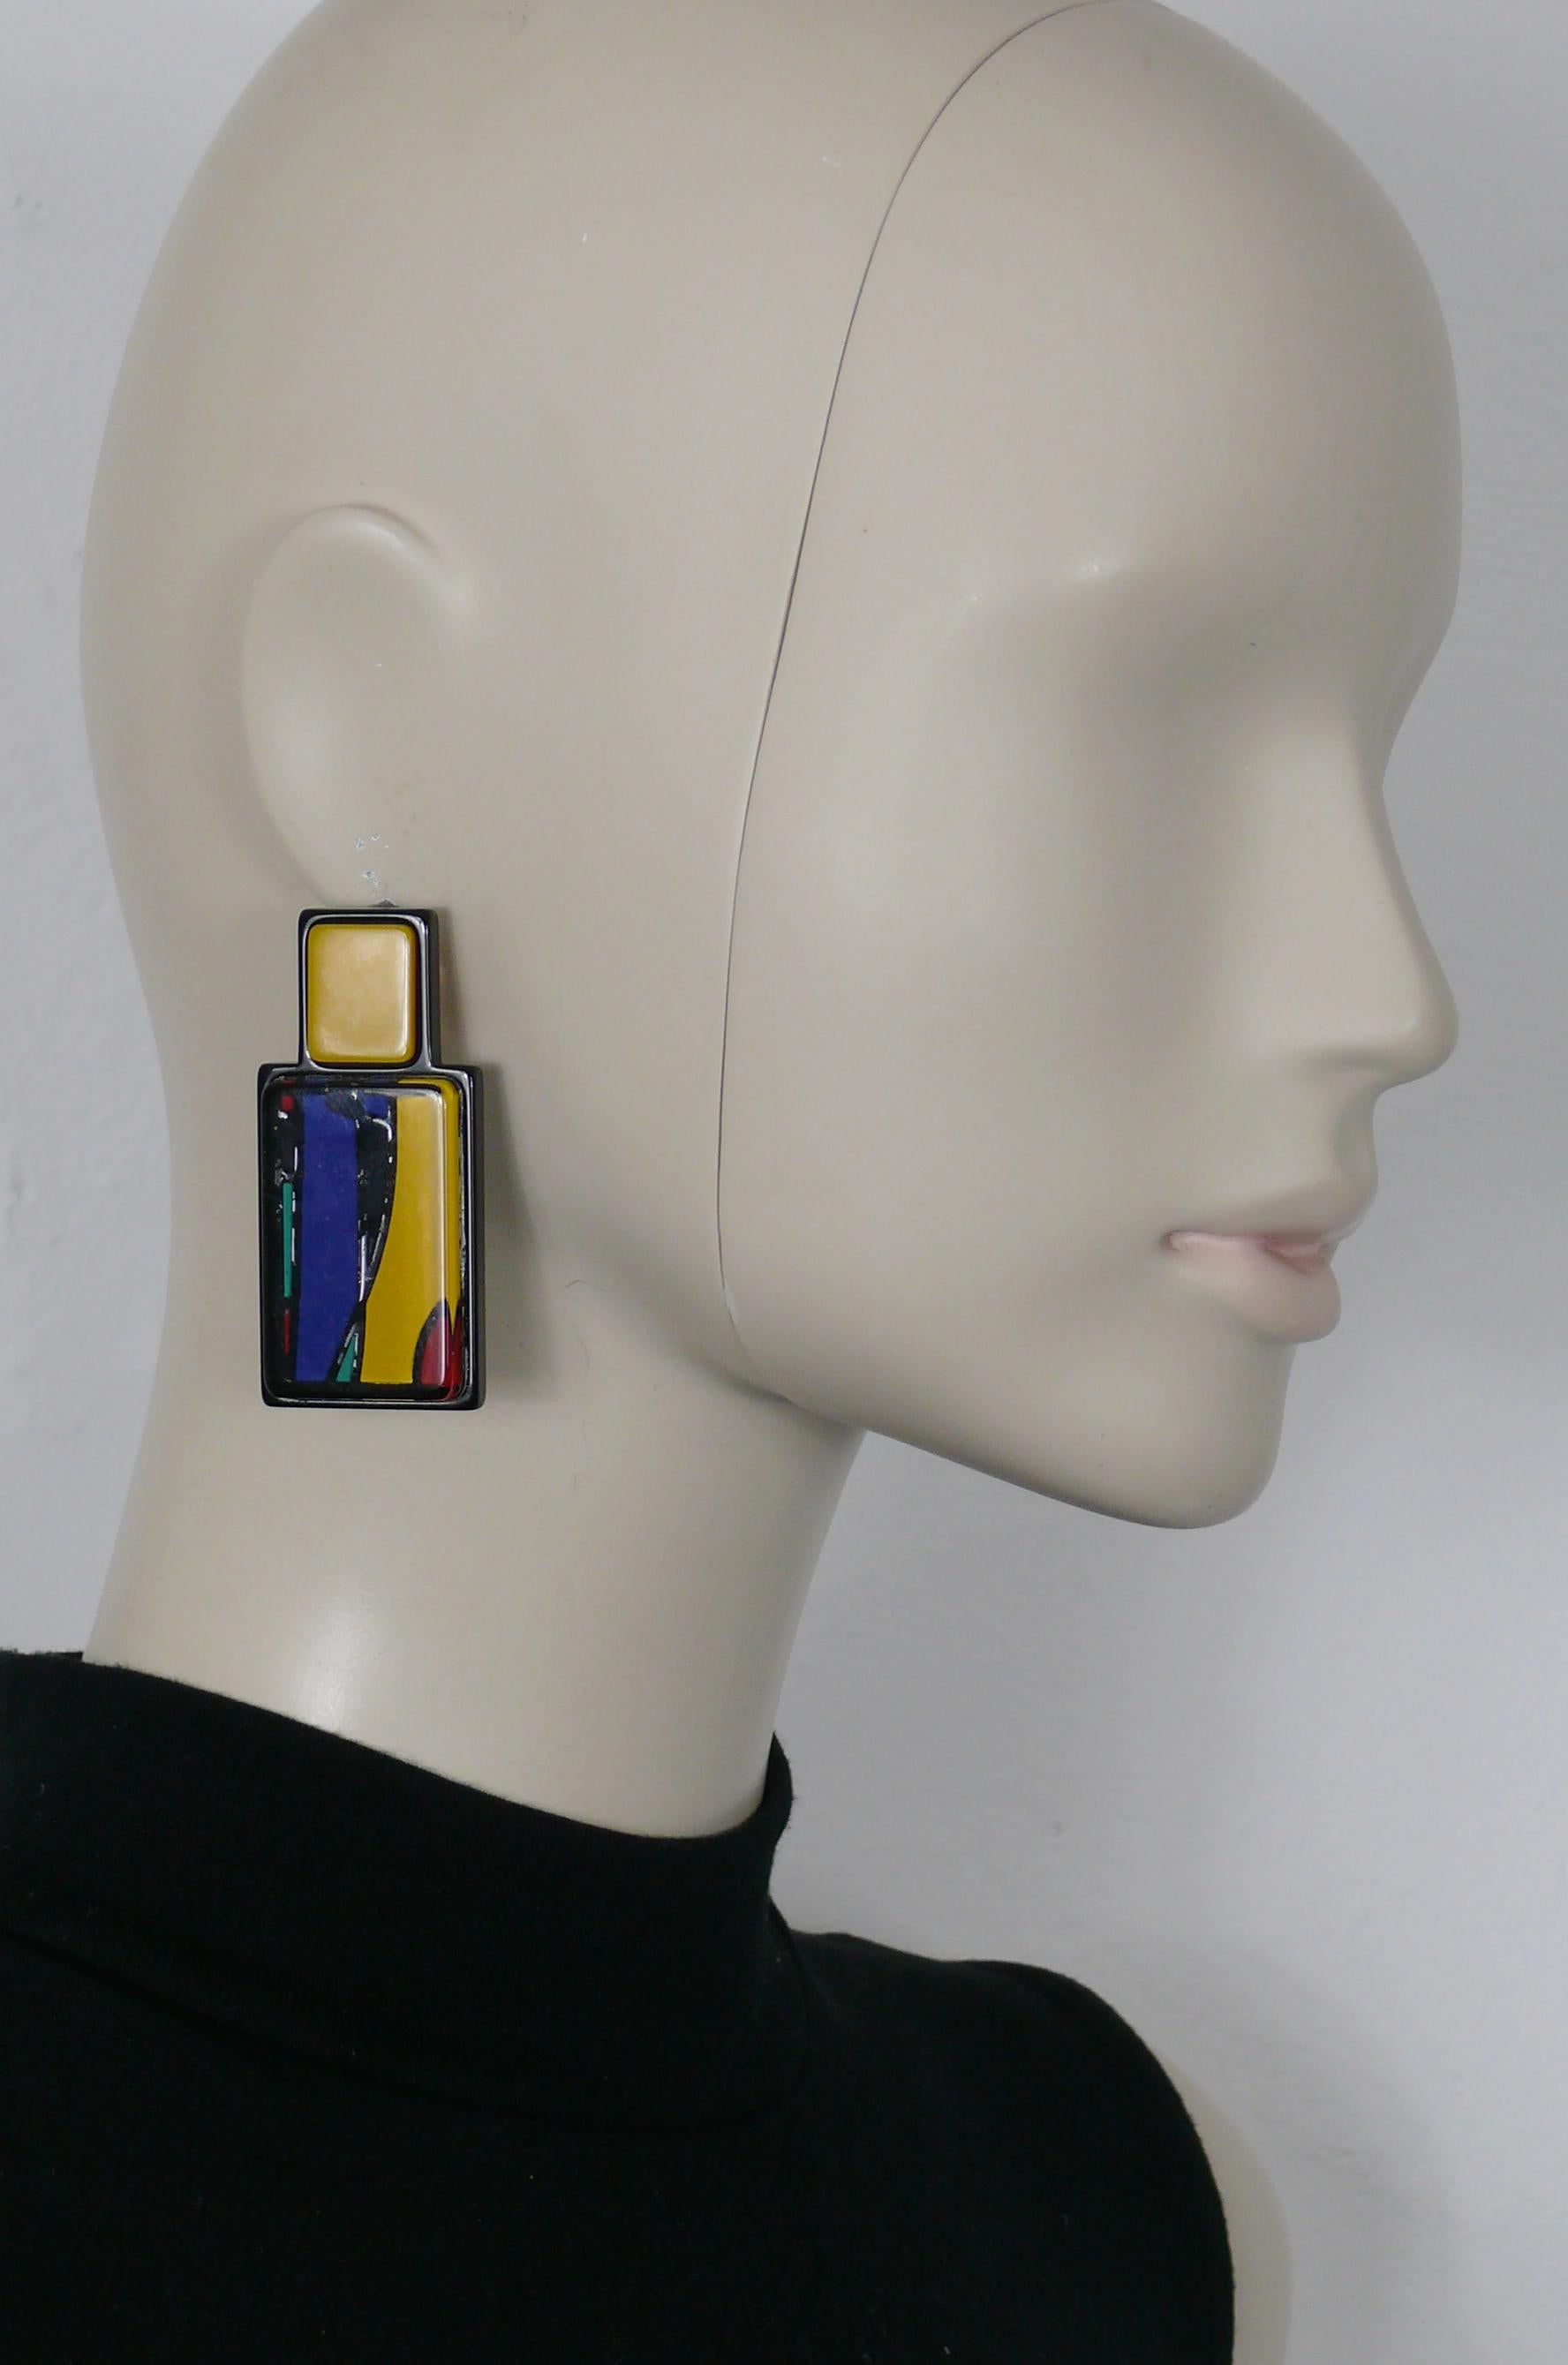 GIORGIO ARMANI multicolored resin flacon design clip-on earrings.

Cursive signature GIORGIO ARMANI.

Indicative measurements : height approx. 6.3 cm (2.48 inches) / width approx. 2.8 cm (1.10 inches).

Weight per earring : approx. 18